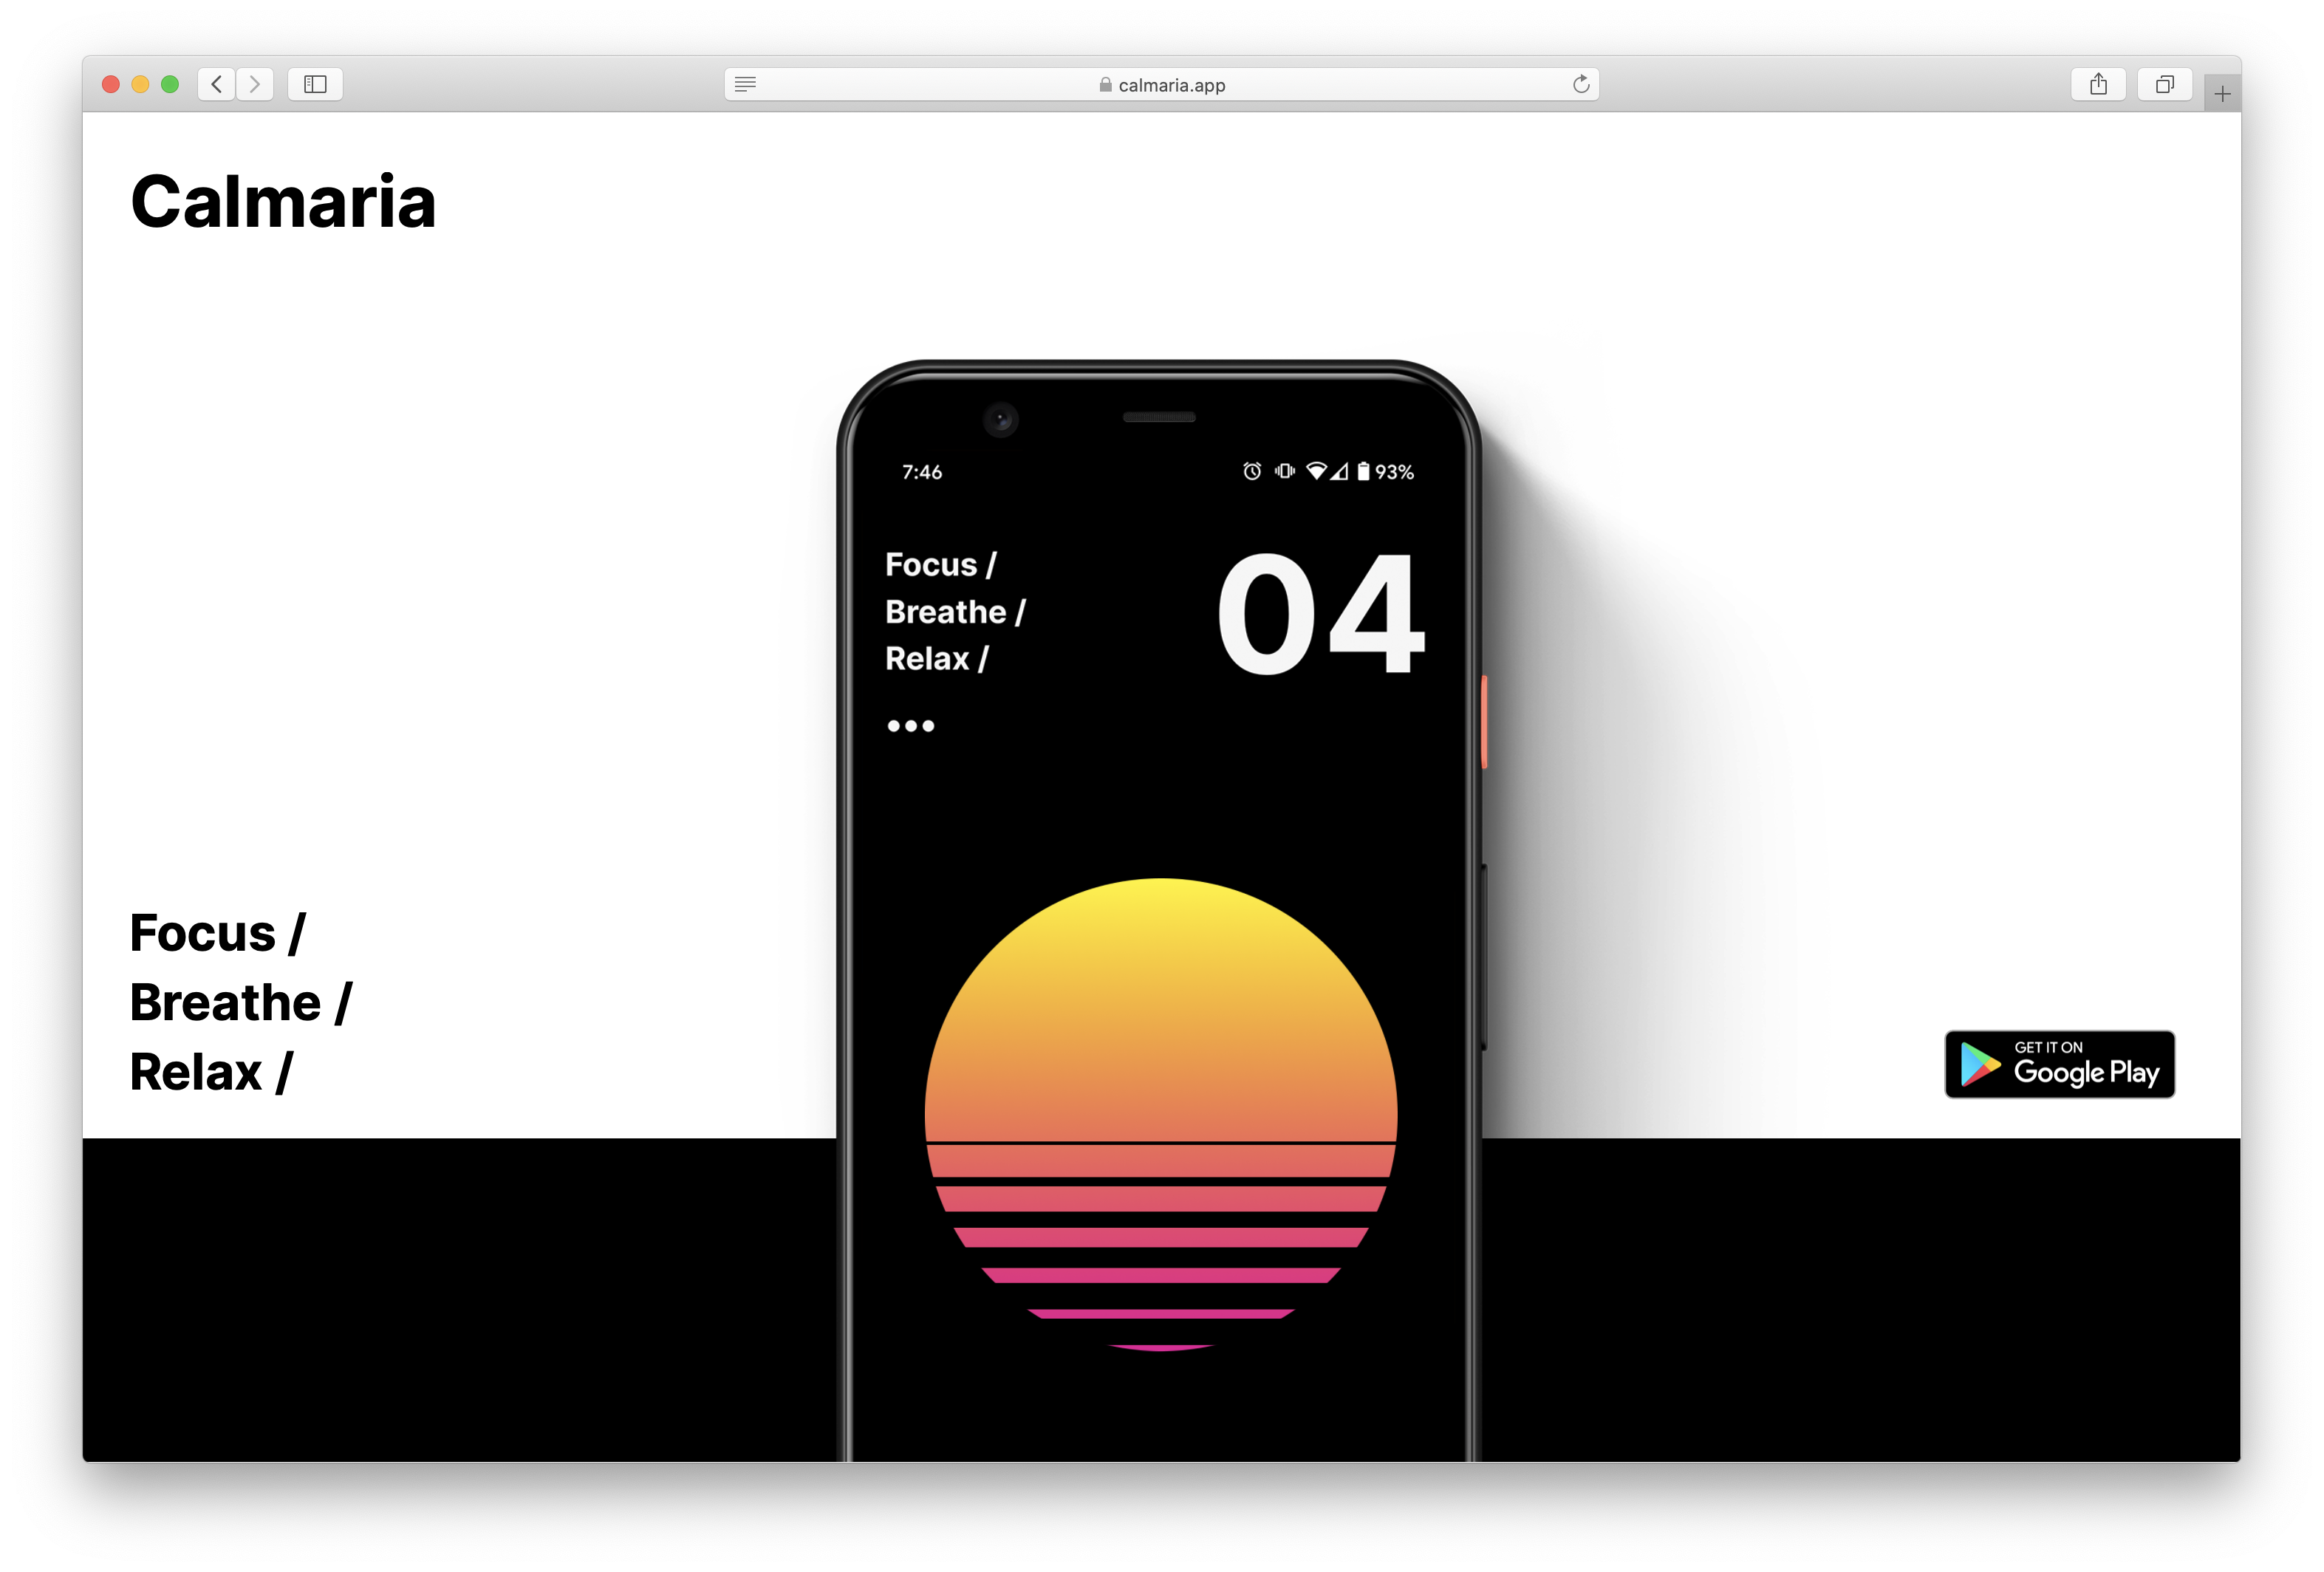 Profile Page screen design idea #127: Calmaria One Page Website Design